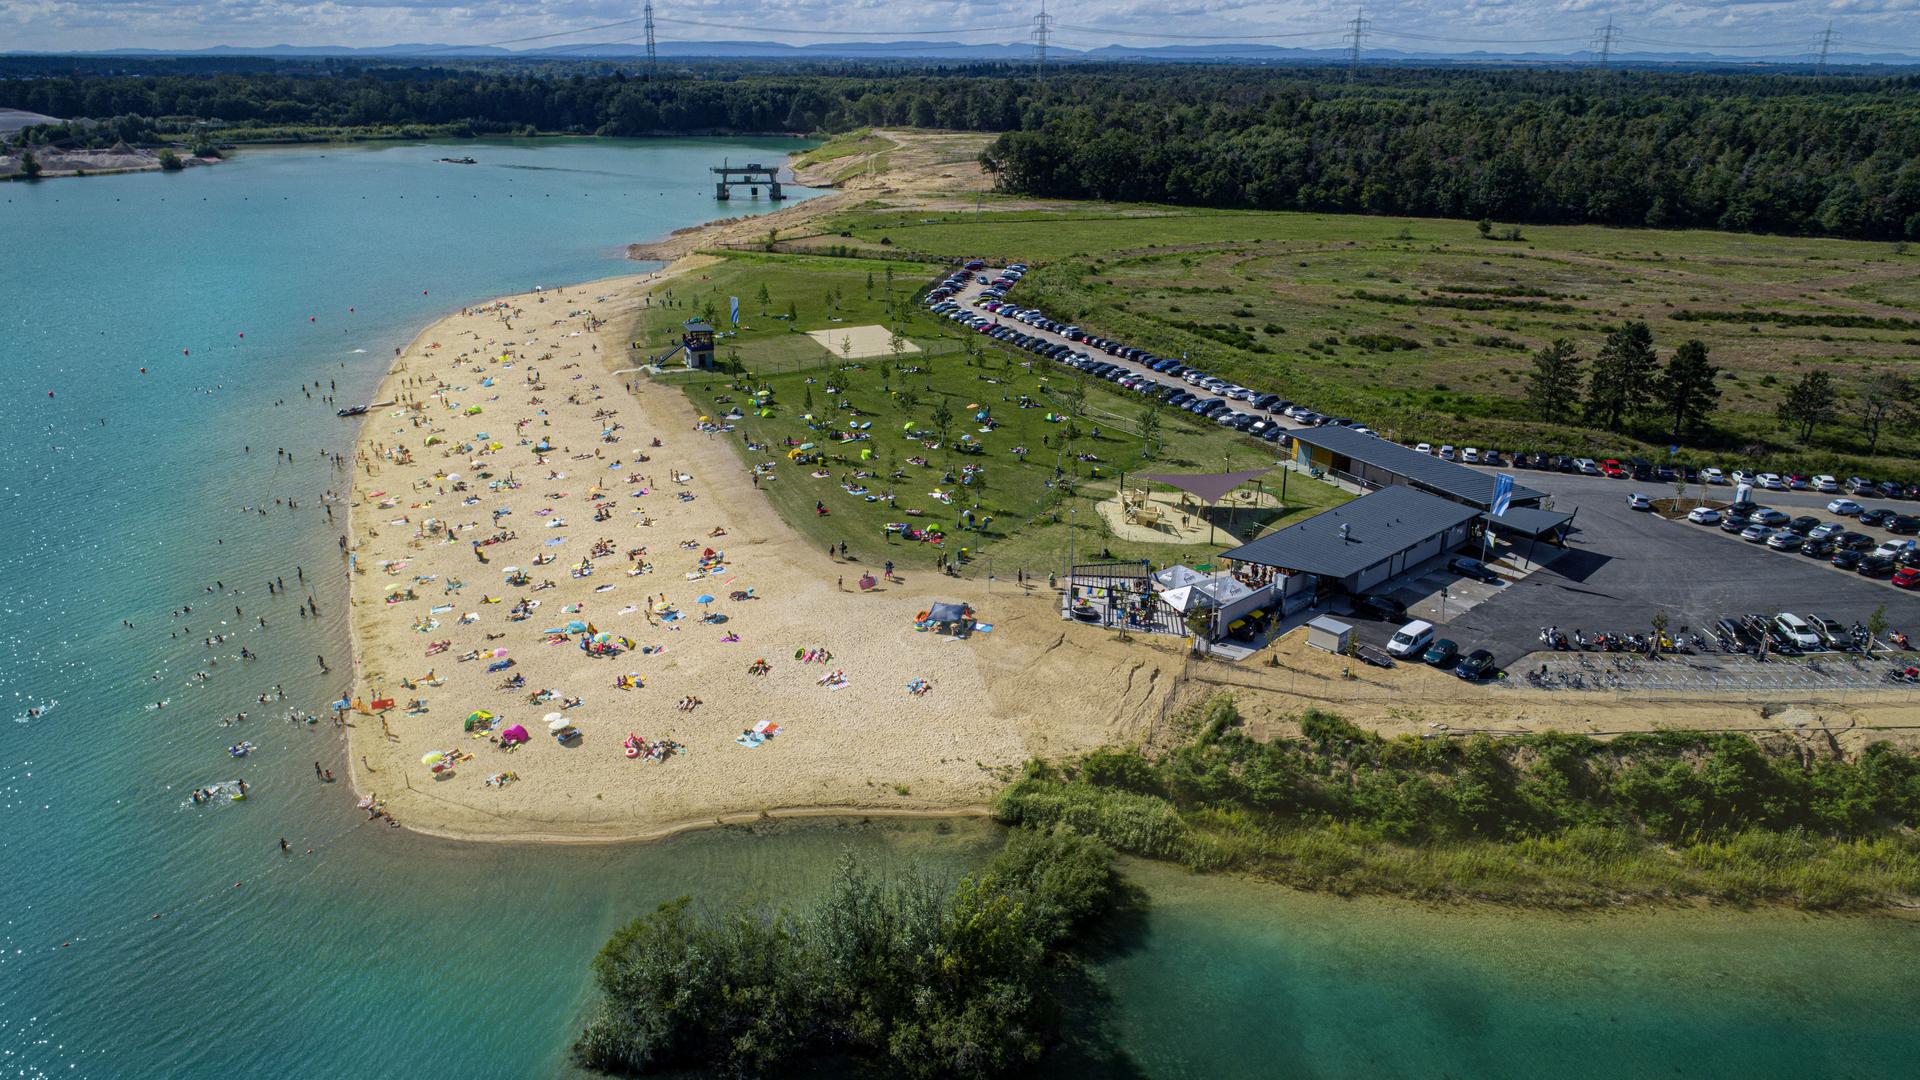 Ein Strandbad für die Kurstadt: Westlich der Autobahn liegt das Strandbad Sandweier. Auf Wassernixen und Sonnenanbeter warten rund 10.000 Quadratmeter Sandstrand. 